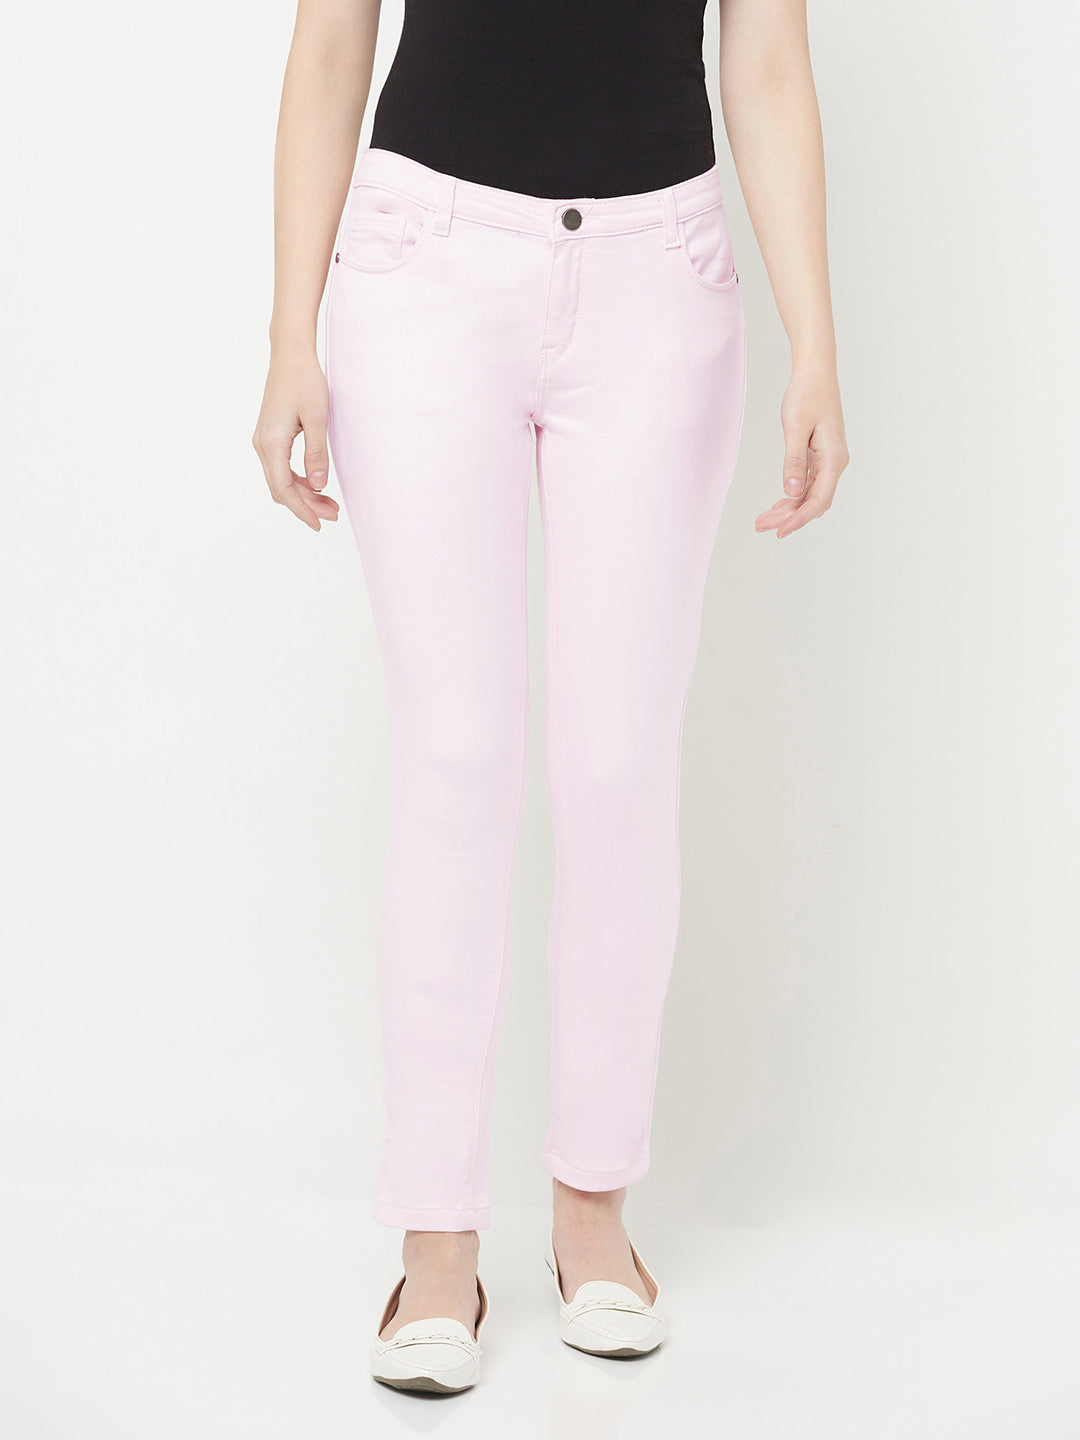 Pink Jeans - Women Jeans